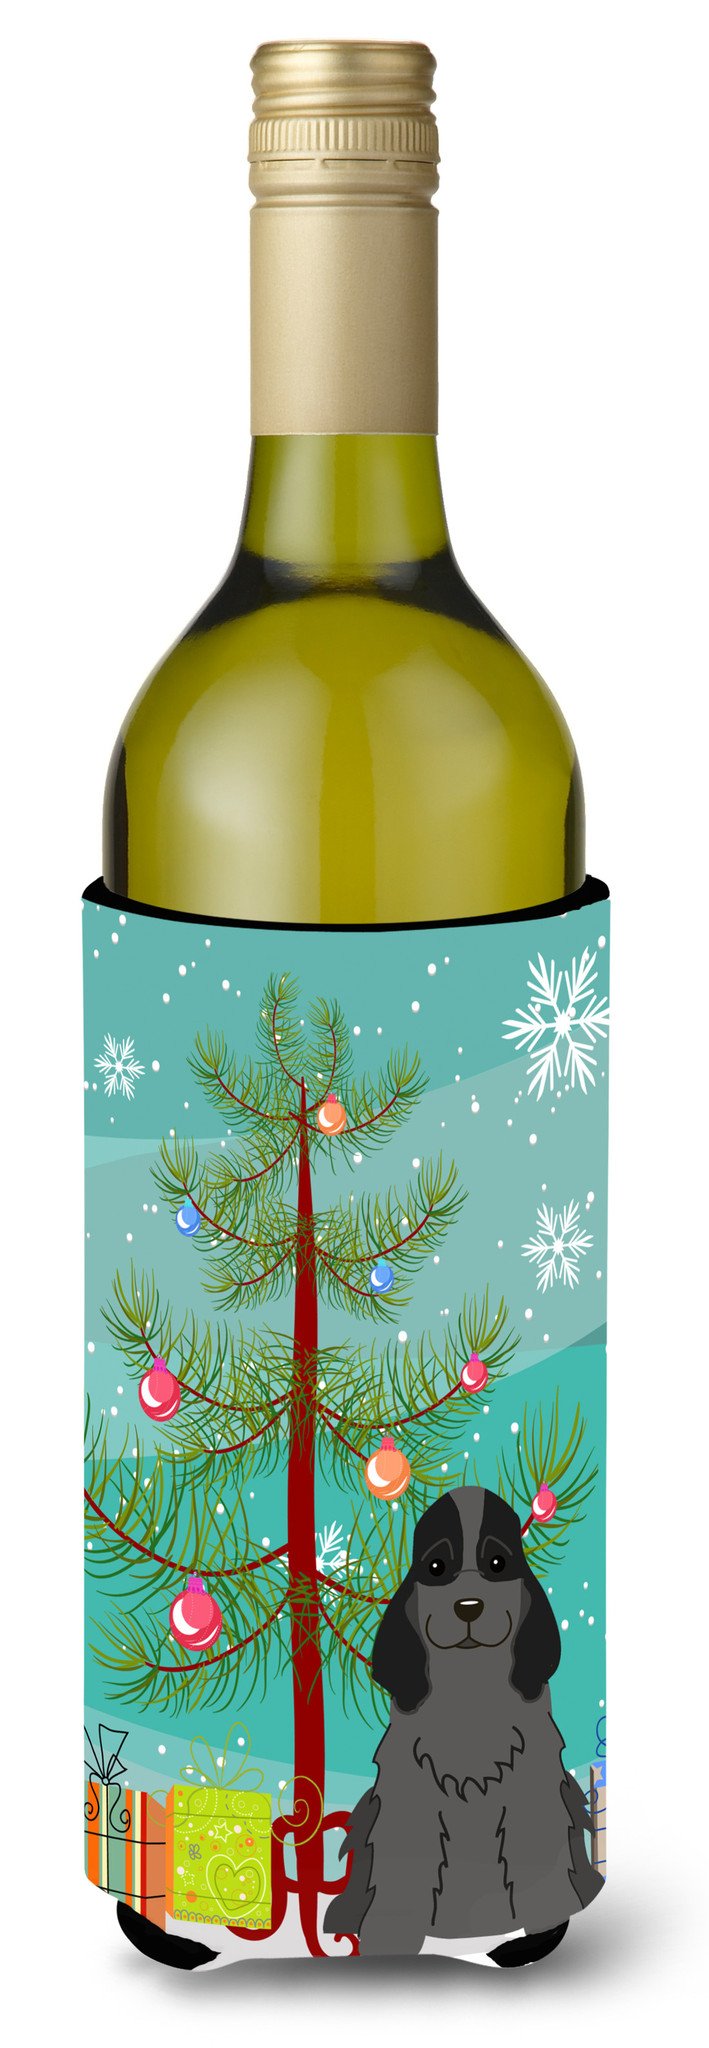 Merry Christmas Tree Cocker Spaniel Black Wine Bottle Beverge Insulator Hugger BB4217LITERK by Caroline's Treasures